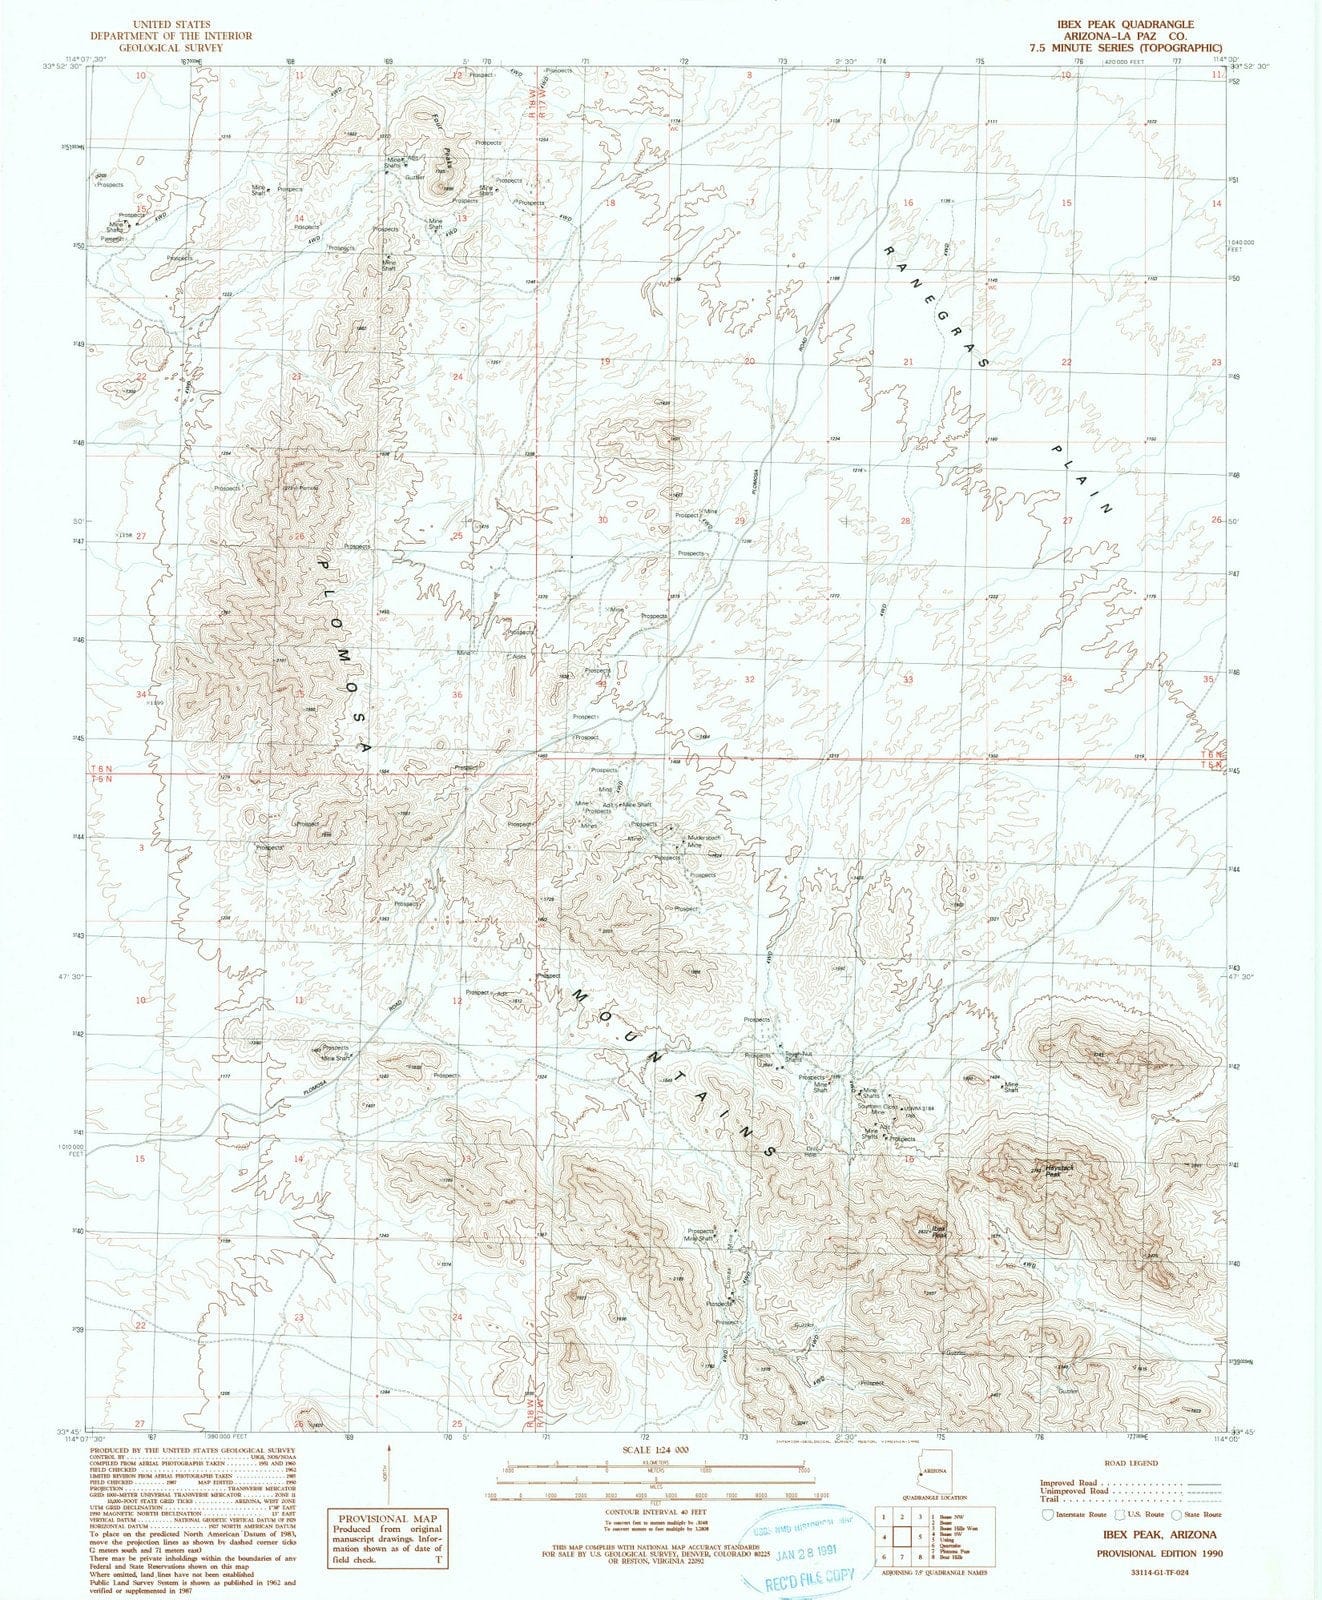 1990 Ibex Peak, AZ - Arizona - USGS Topographic Map